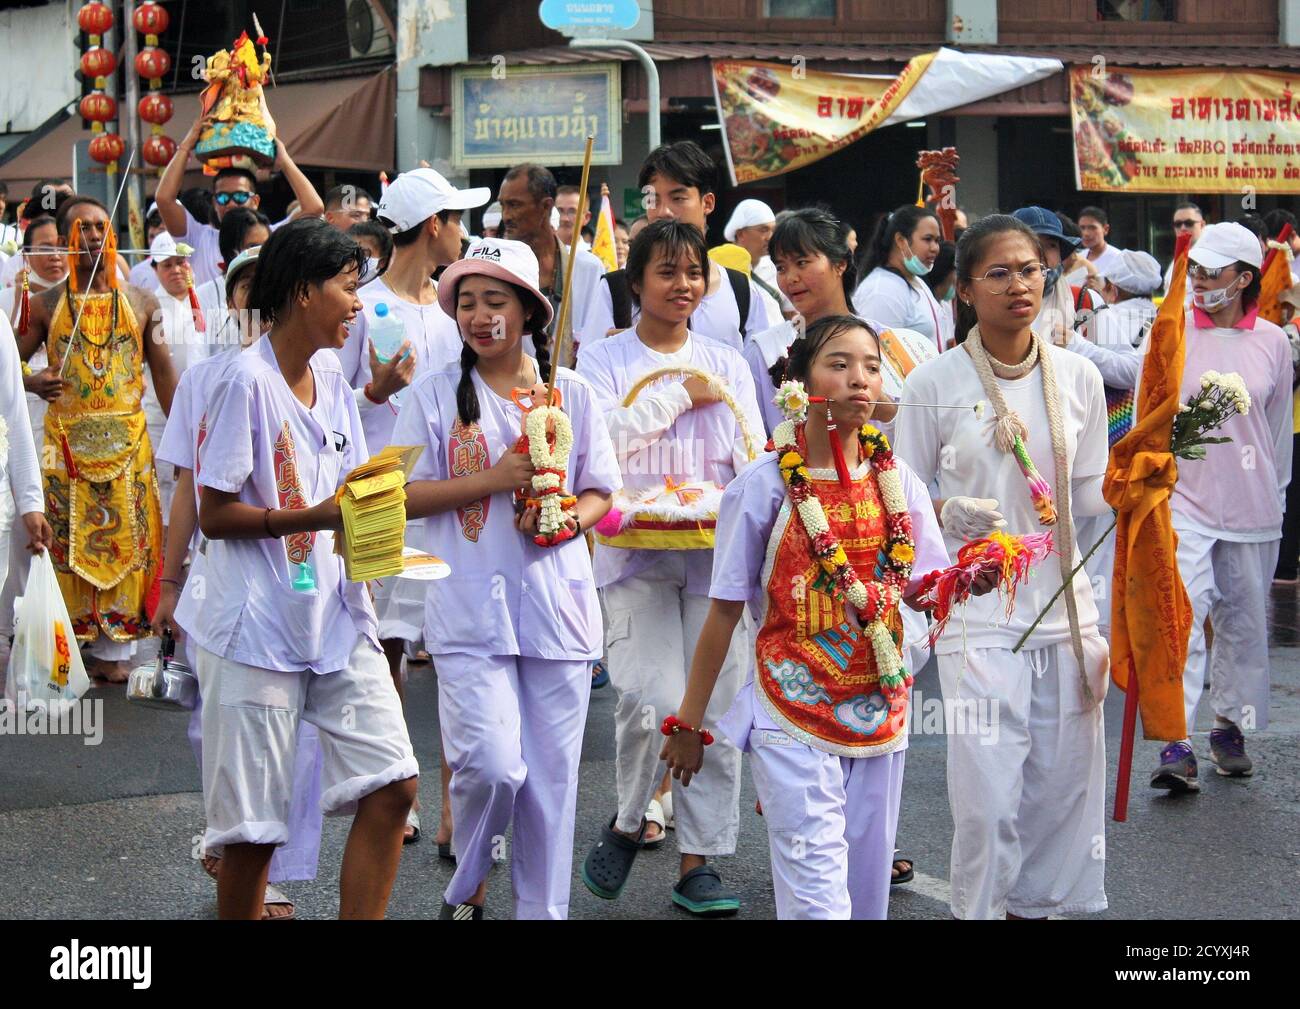 Phuket Town / Thaïlande - 7 octobre 2019 : Fête végétarienne de Phuket ou procession du Nine Emperor Gods Festival, dévotés chinois thaïlandais en vêtements blancs Banque D'Images